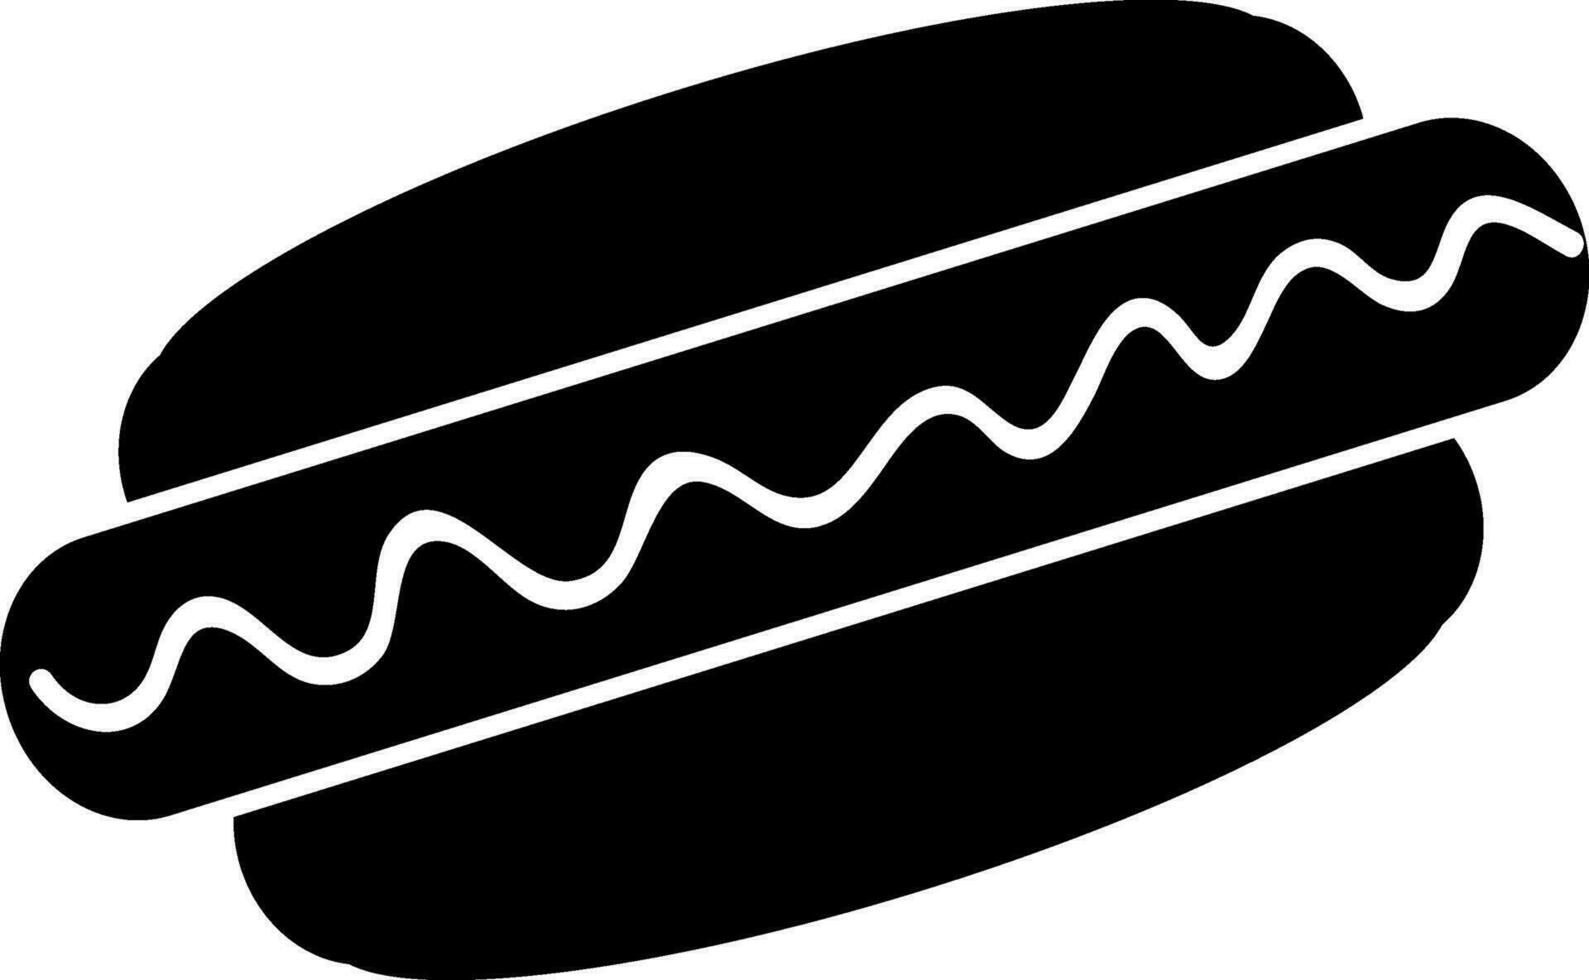 plano estilo hamburguesa en negro y blanco color. vector